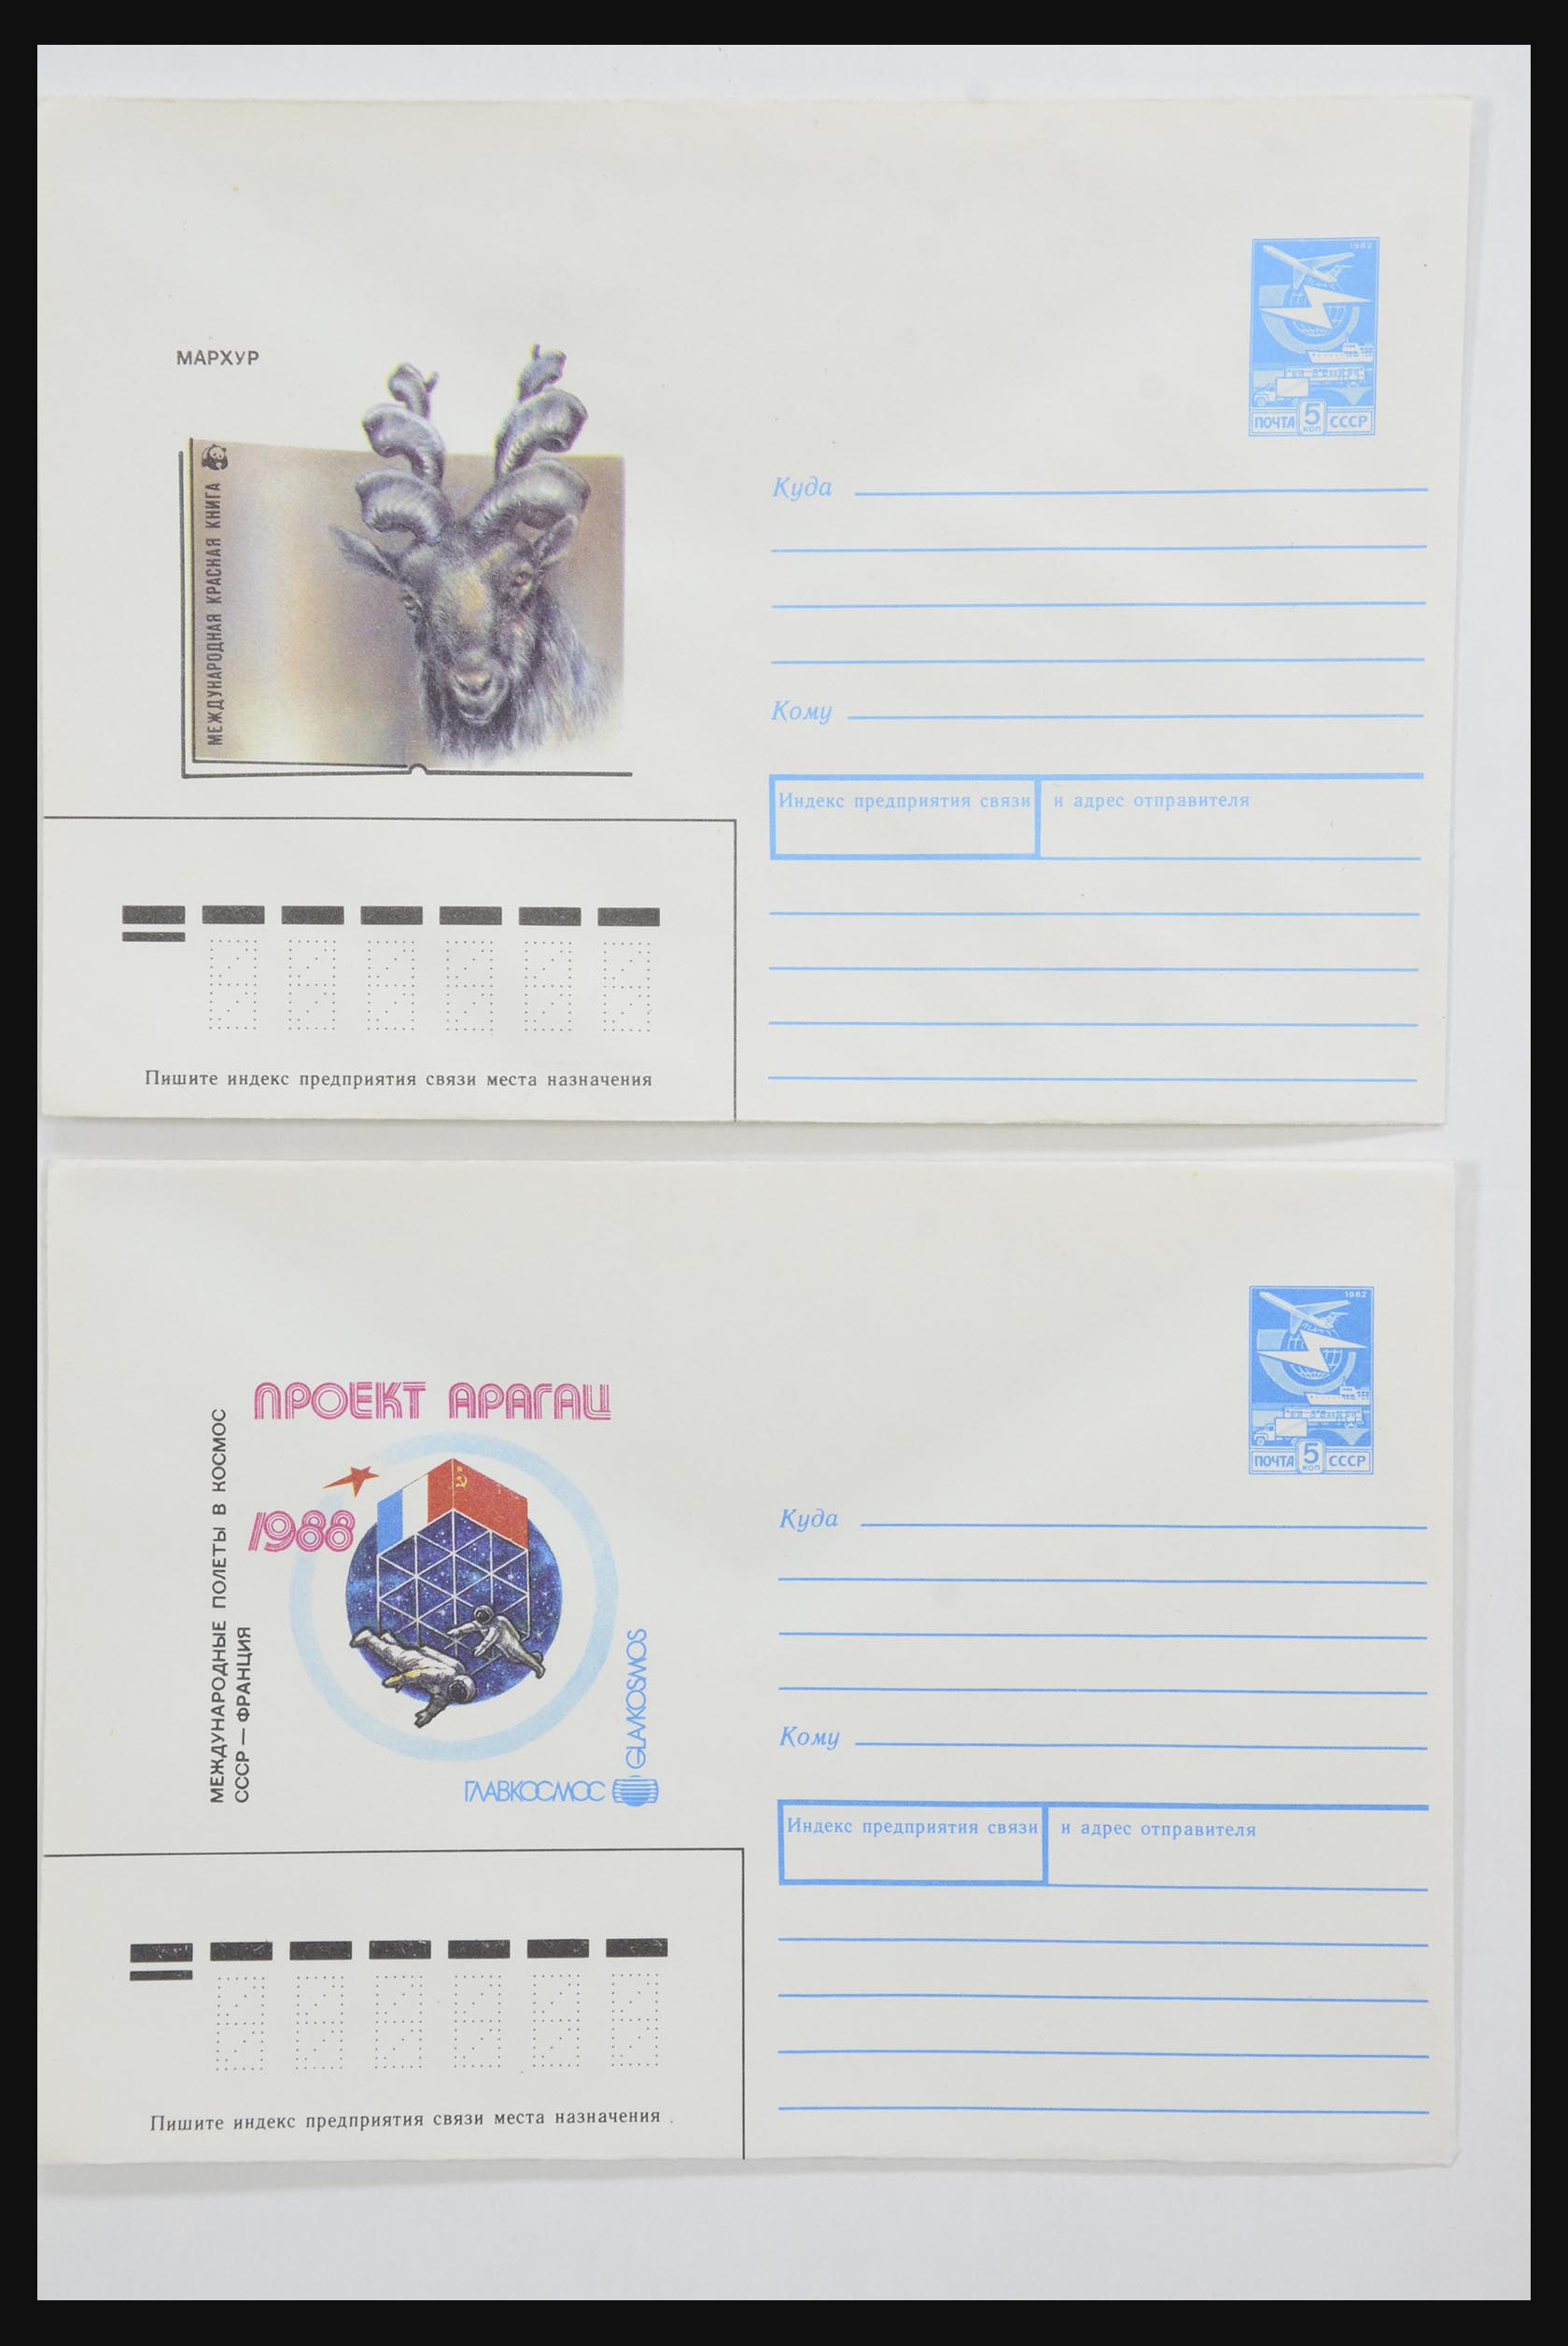 31928 0038 - 31928 Oost Europa brieven jaren 60/90.